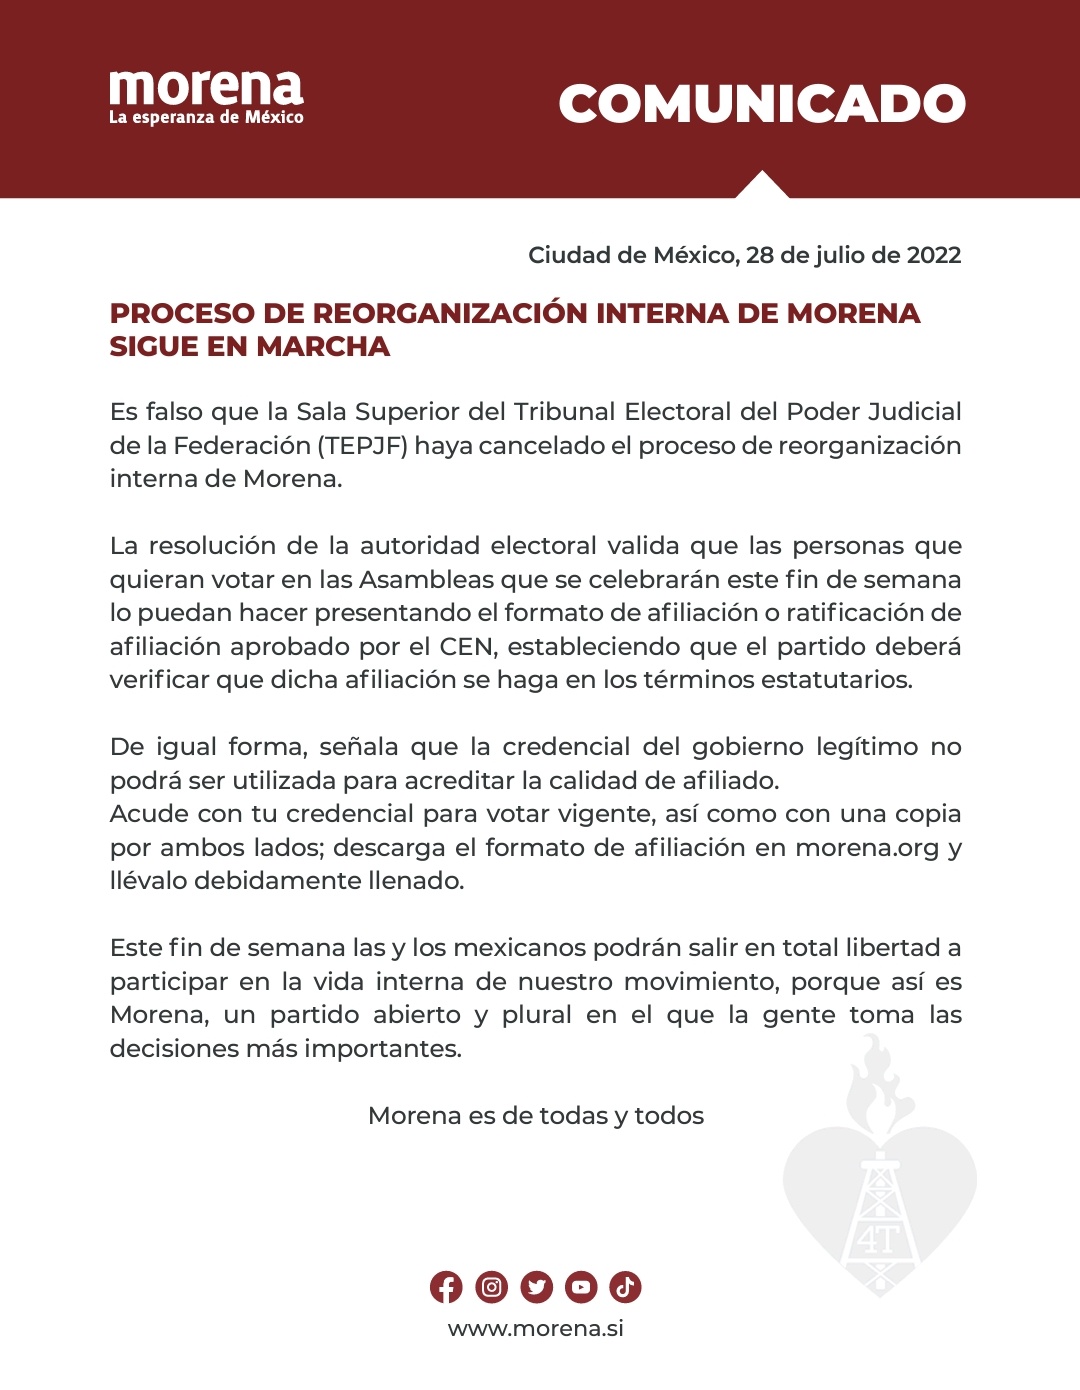 Ricardo Monreal denunció exclusión en elecciones de consejeros de Morena:  “Hay vicios de origen en el proceso” - Infobae